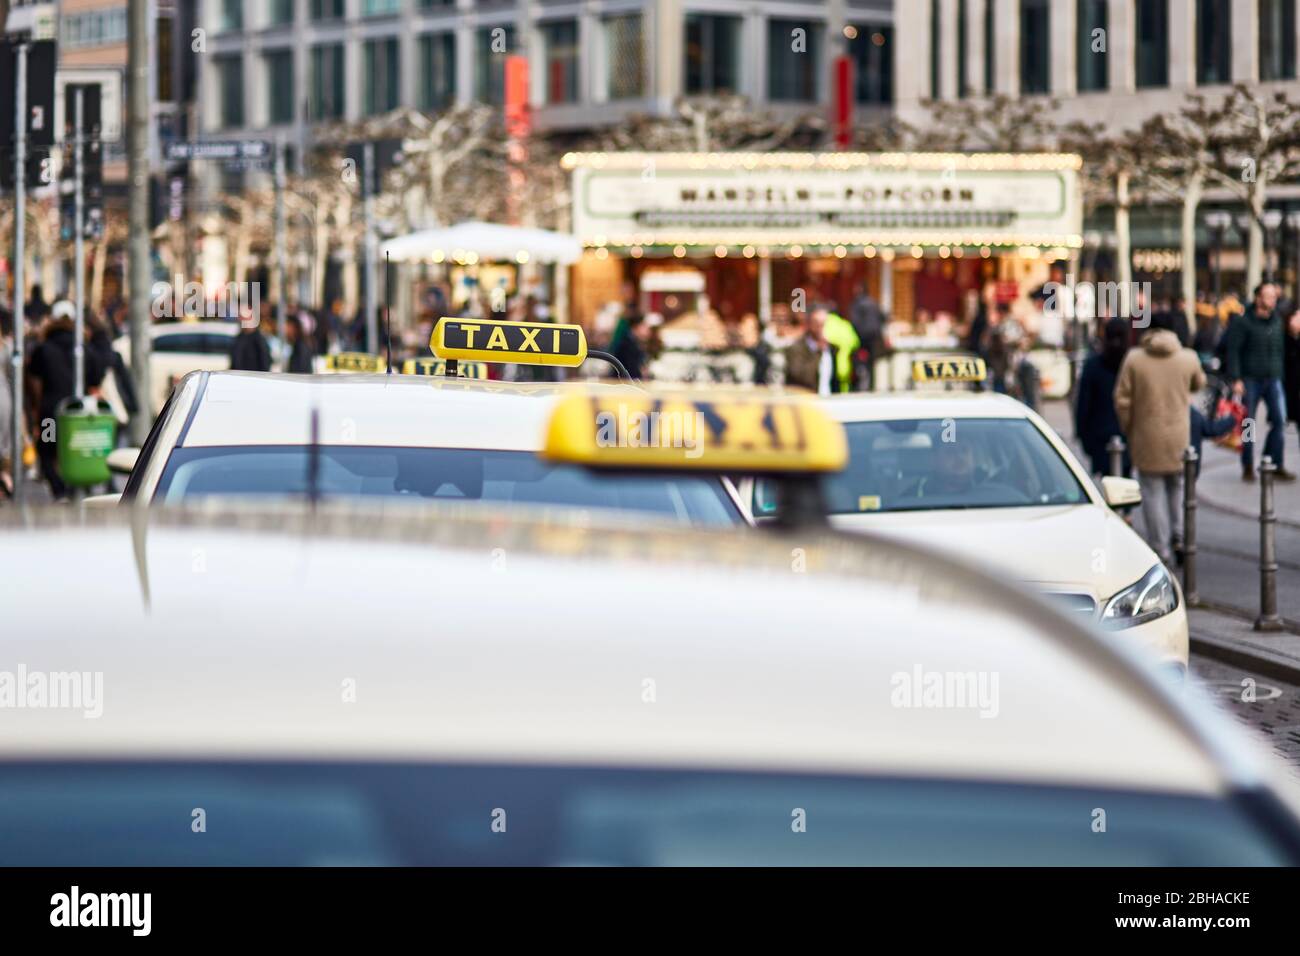 Europa, Deutschland, Hessen, Frankfurt, An der Hauptwache, wartende Taxis Stock Photo